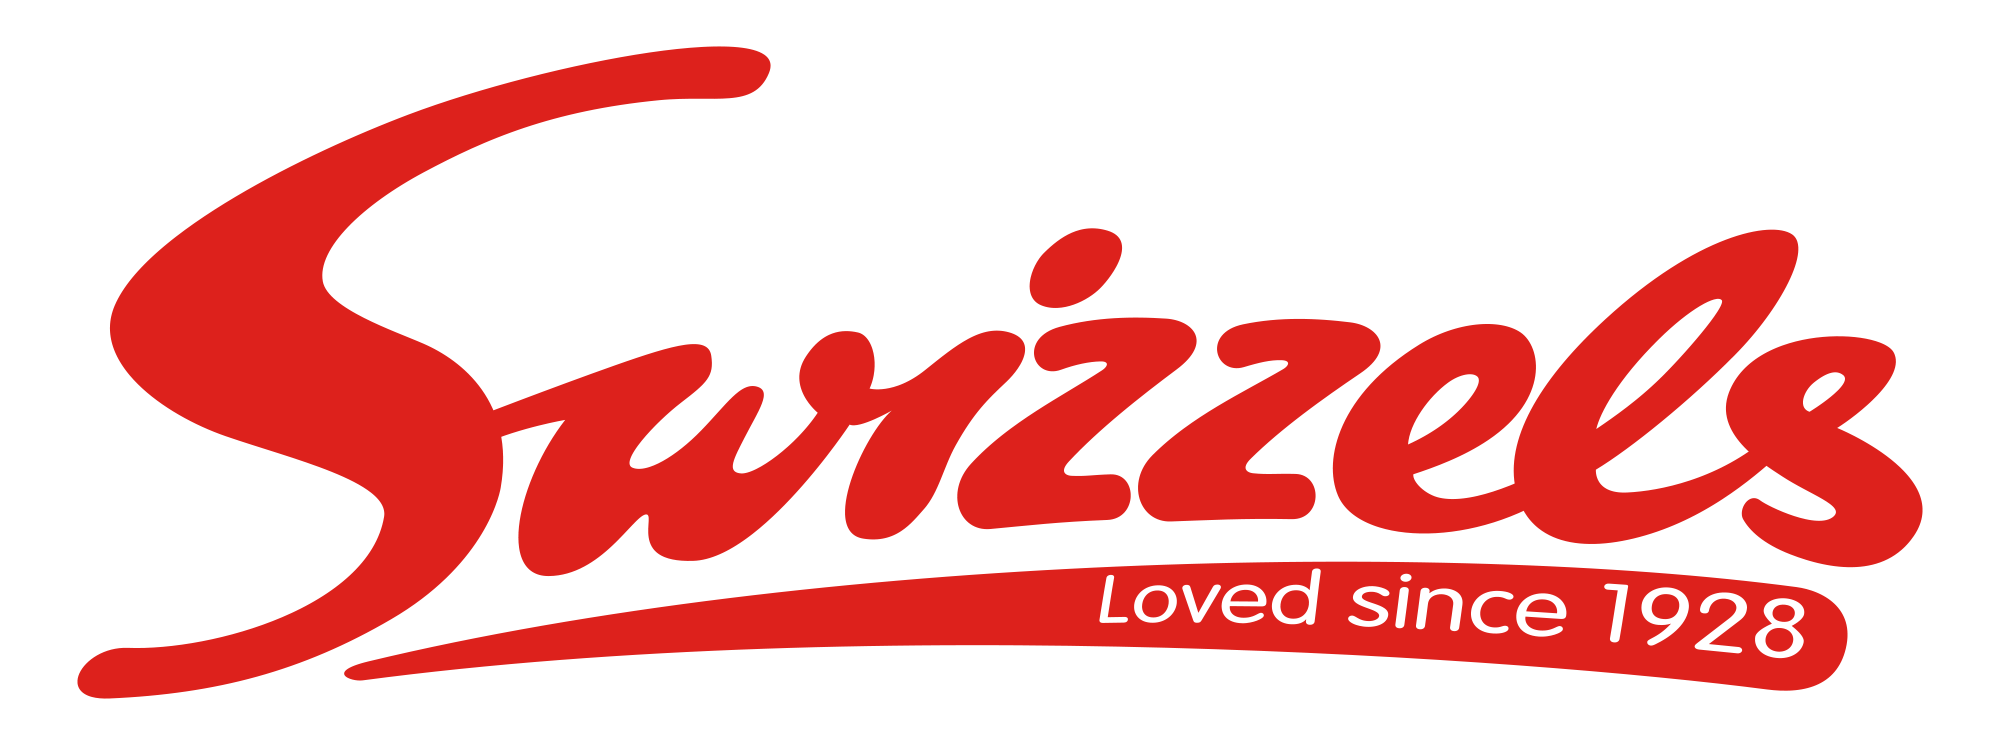 Swizzels_New_Logo